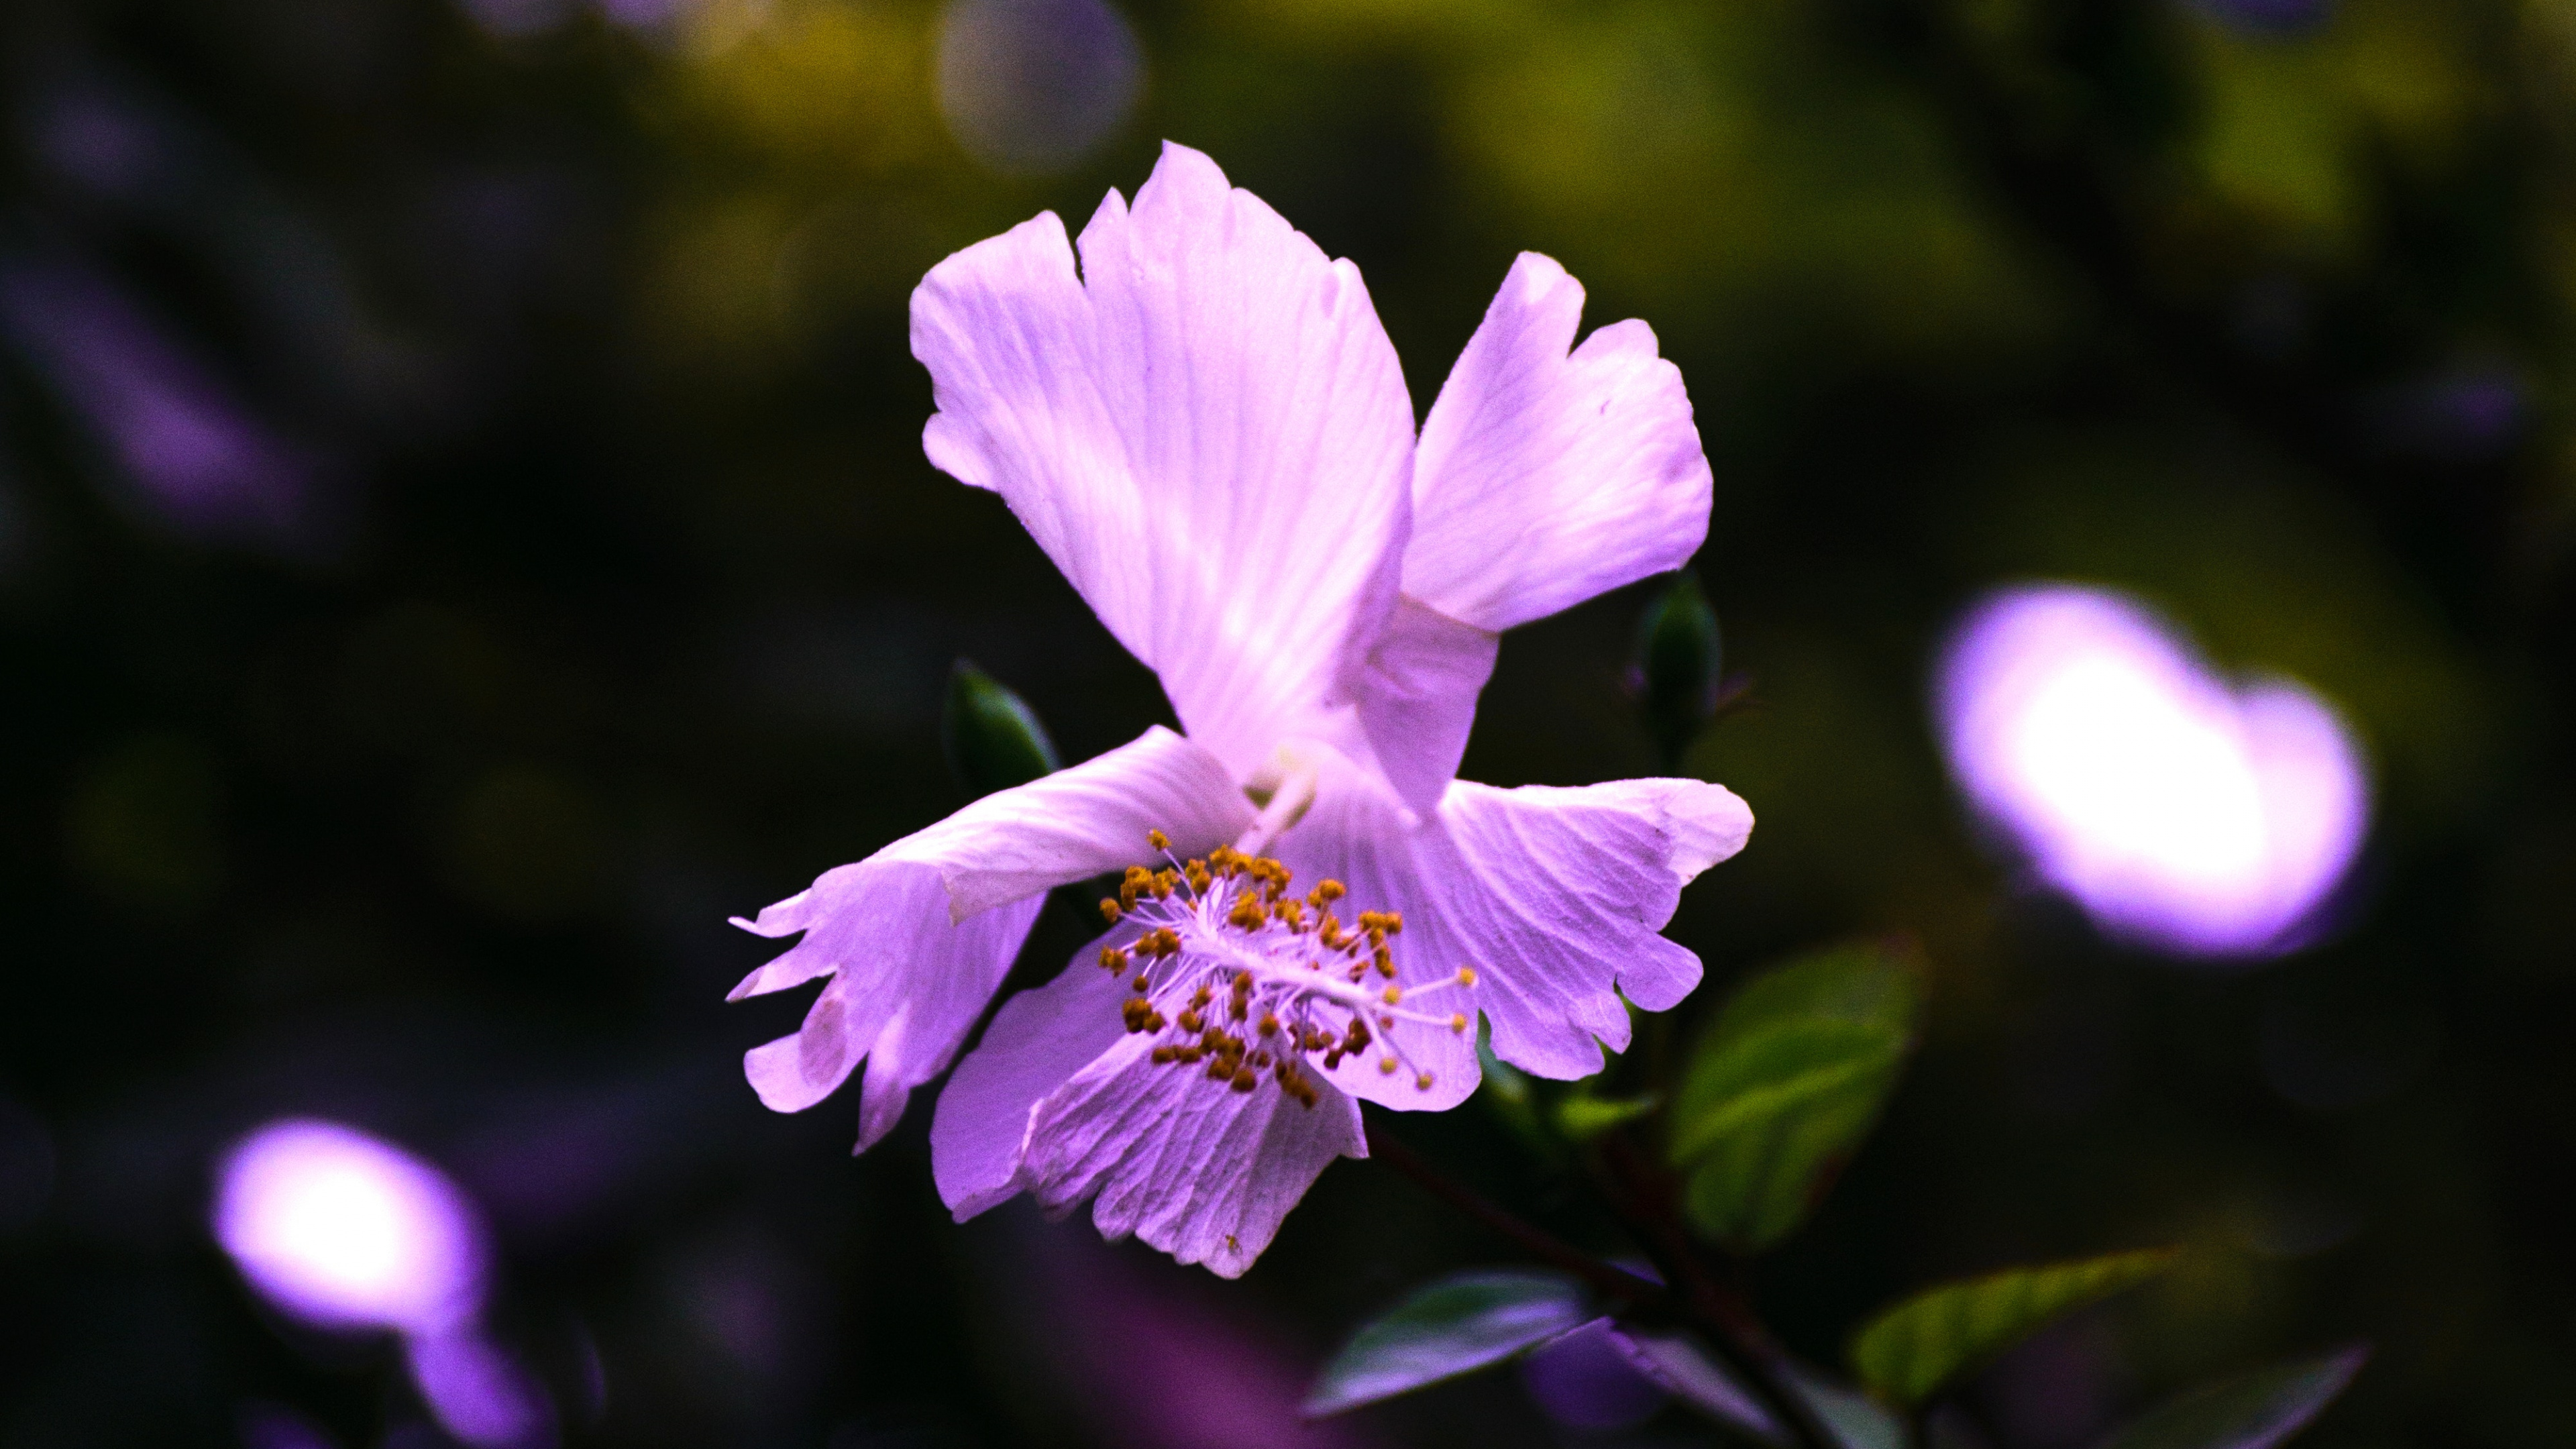 Purple Flower in Tilt Shift Lens. Wallpaper in 3840x2160 Resolution